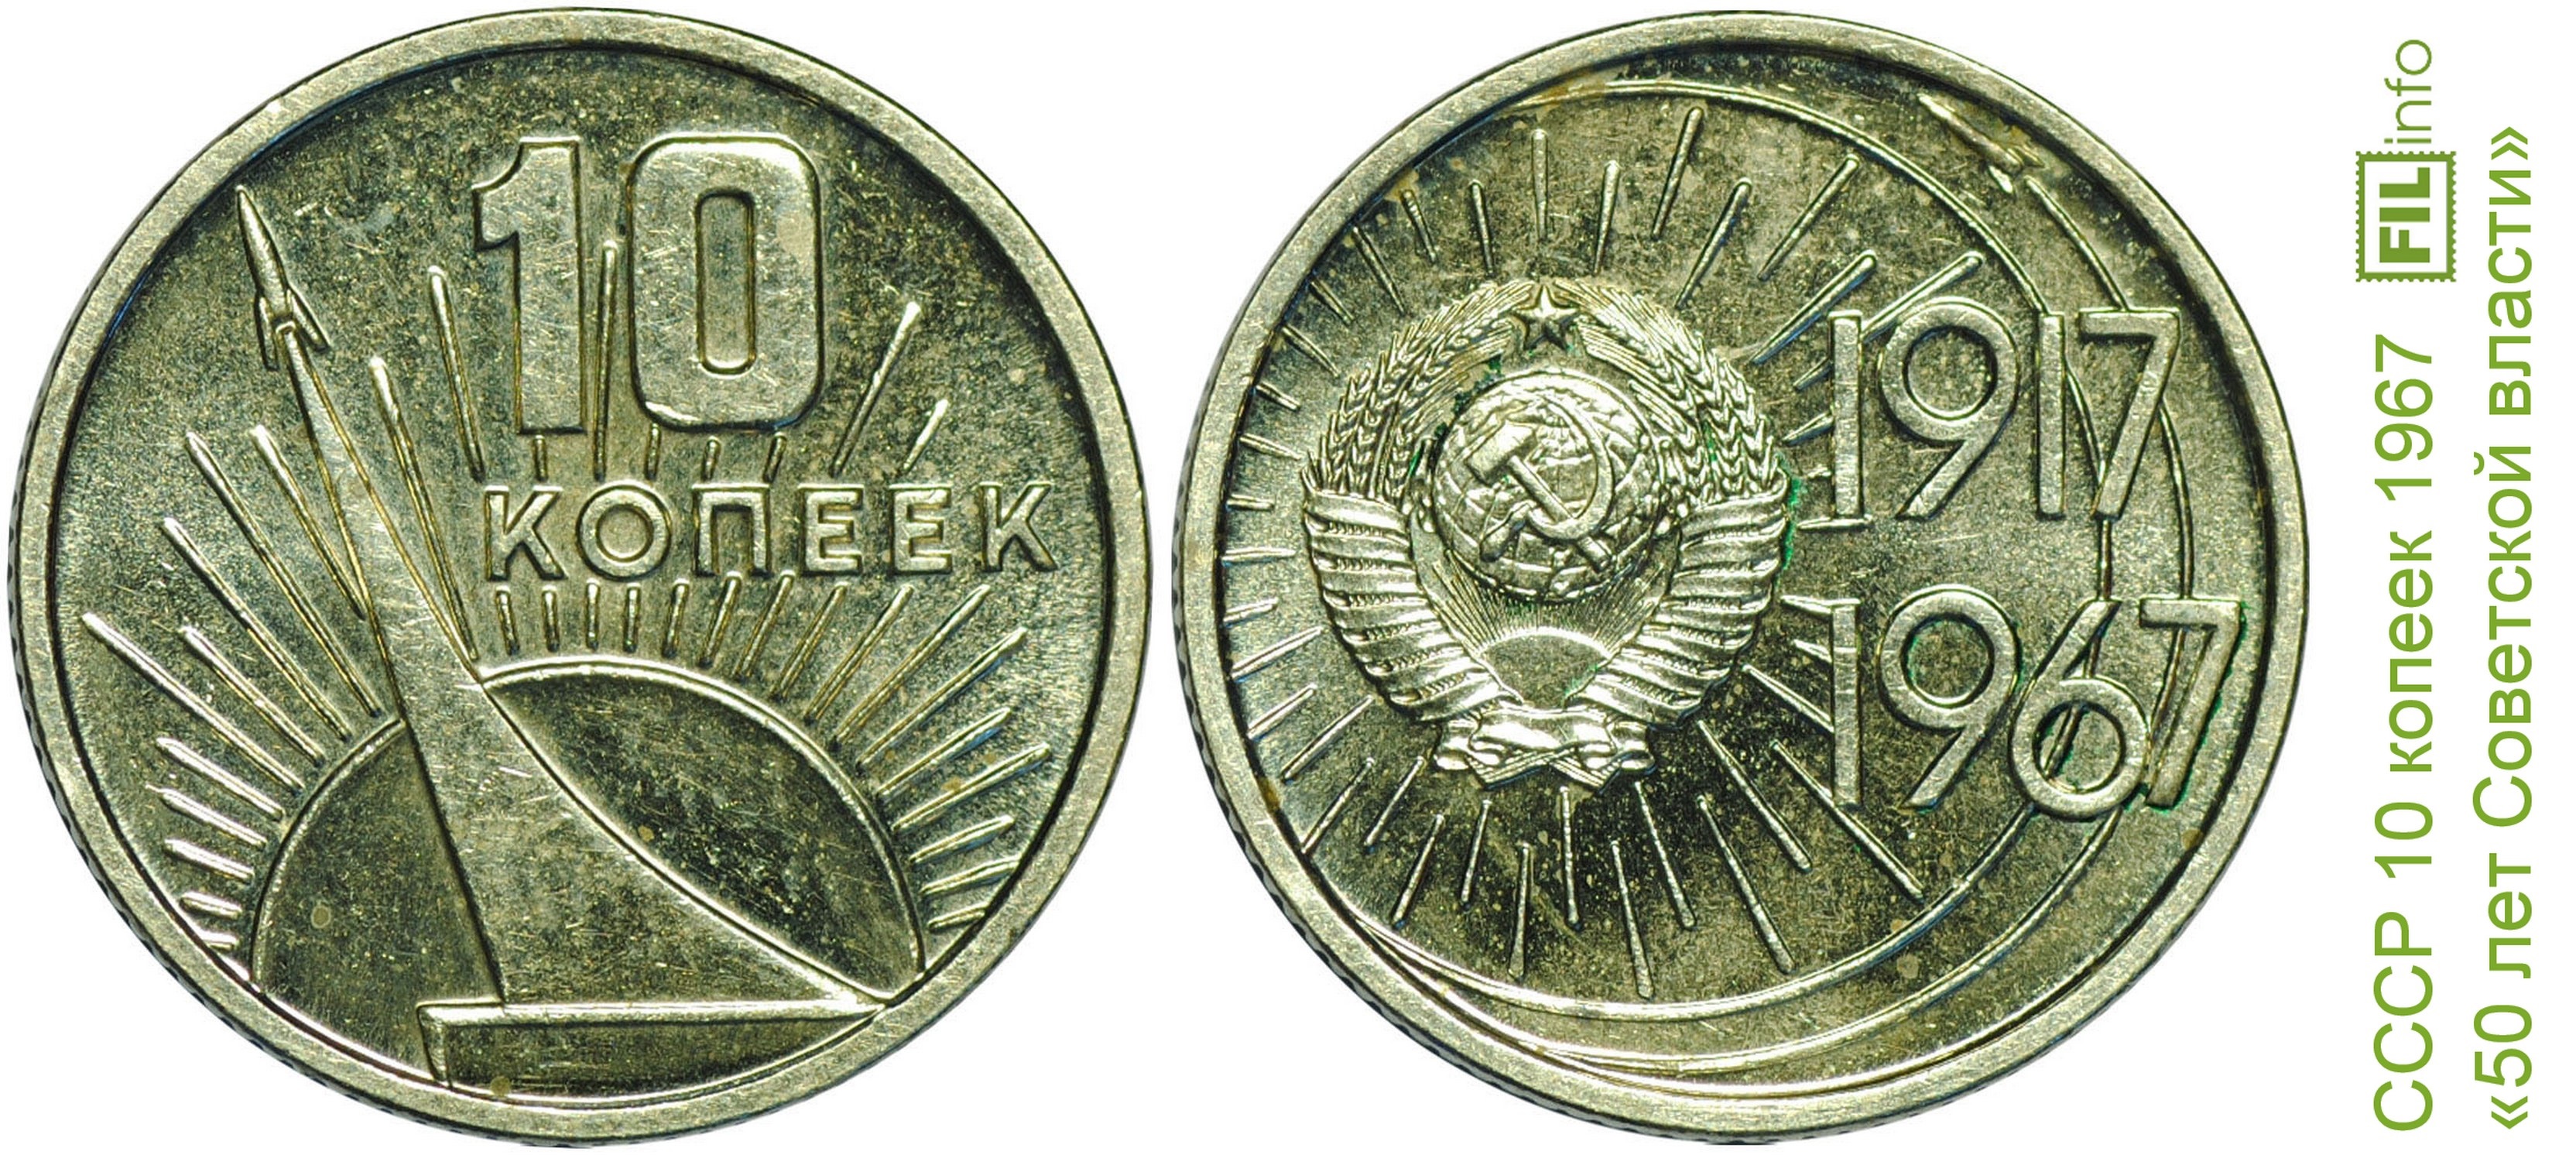 Советская монета 1917 1967